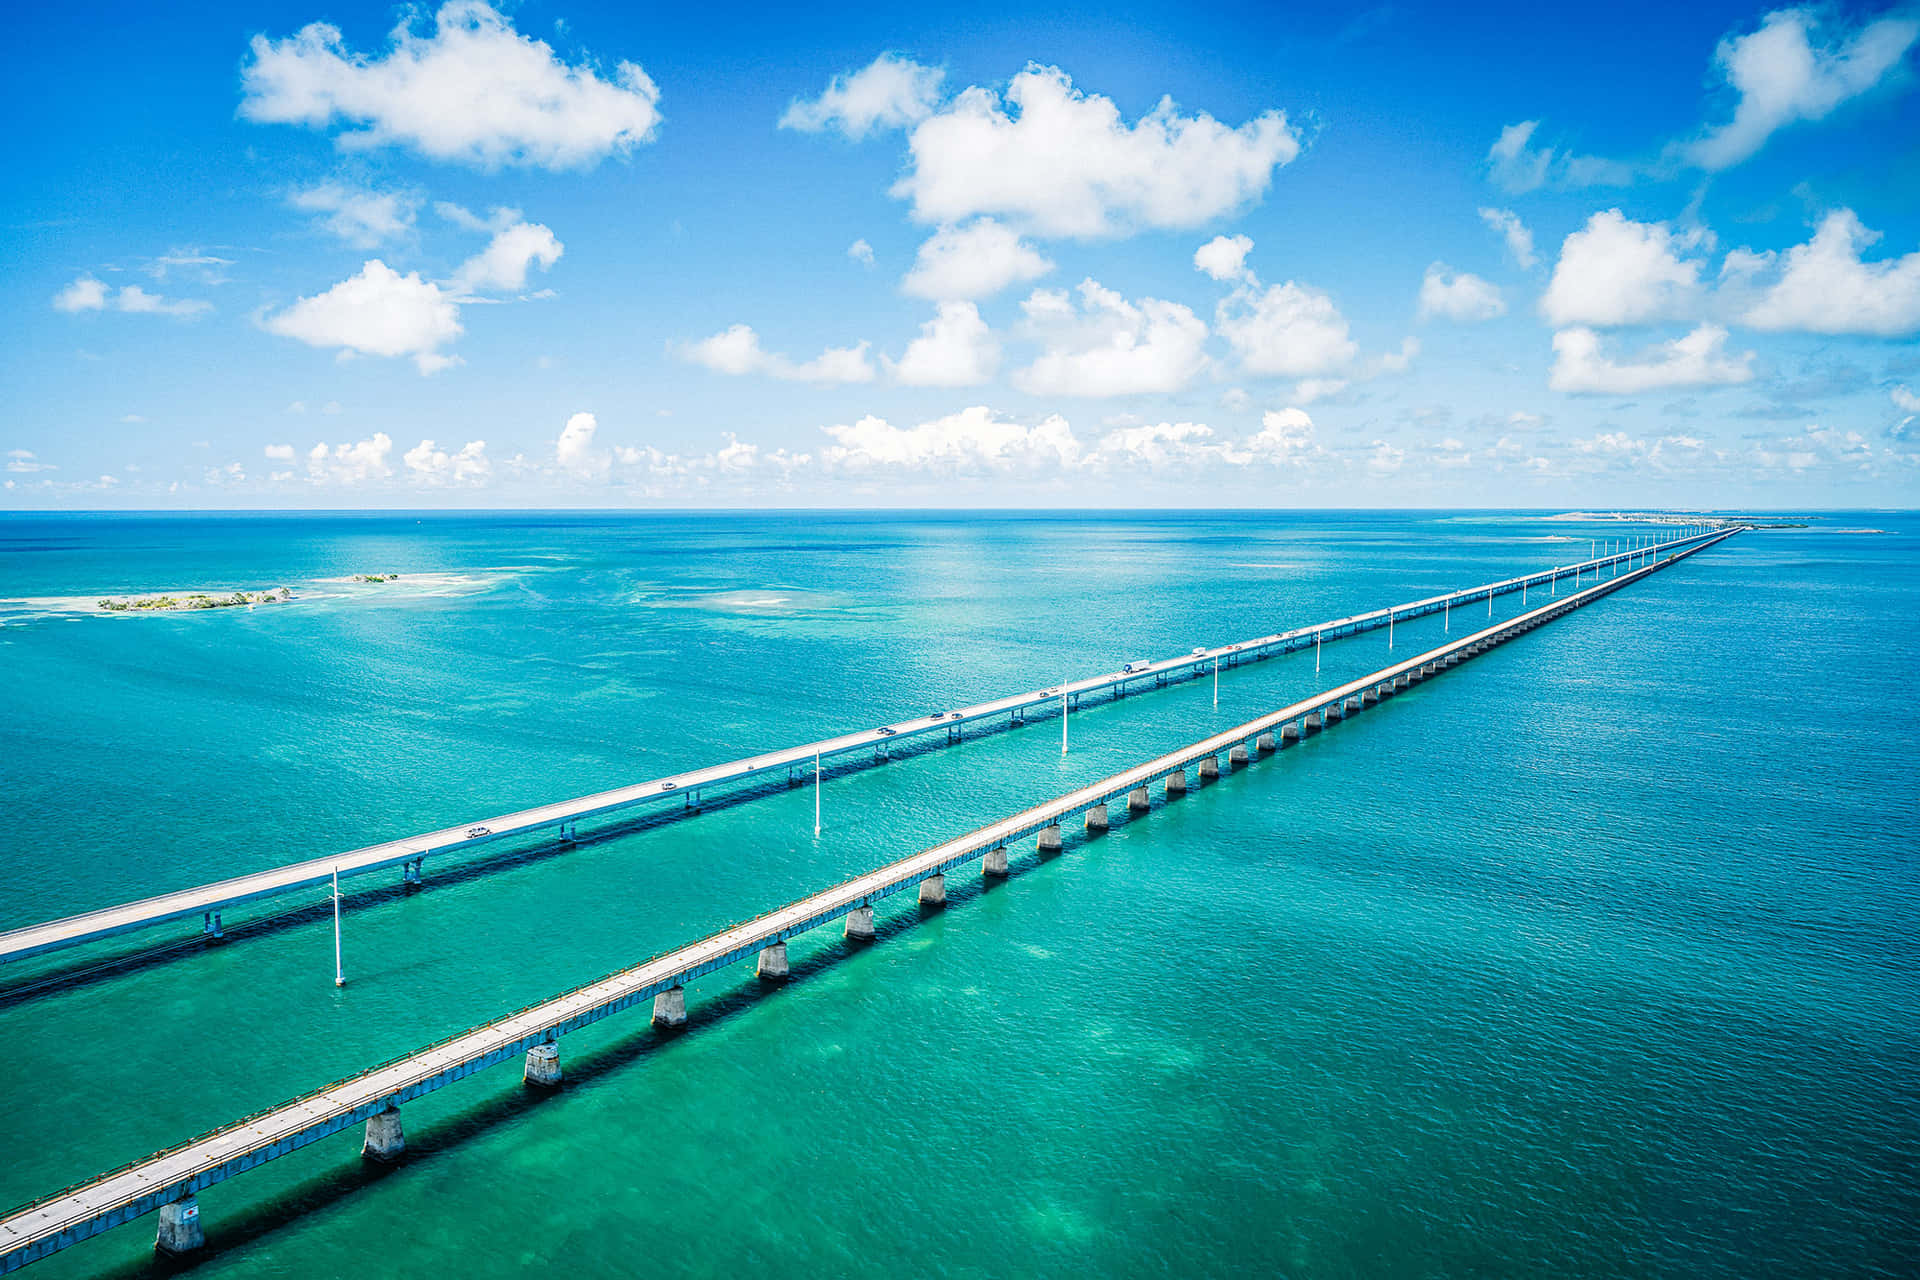 Einelange Brücke, Die Den Ozean Überspannt